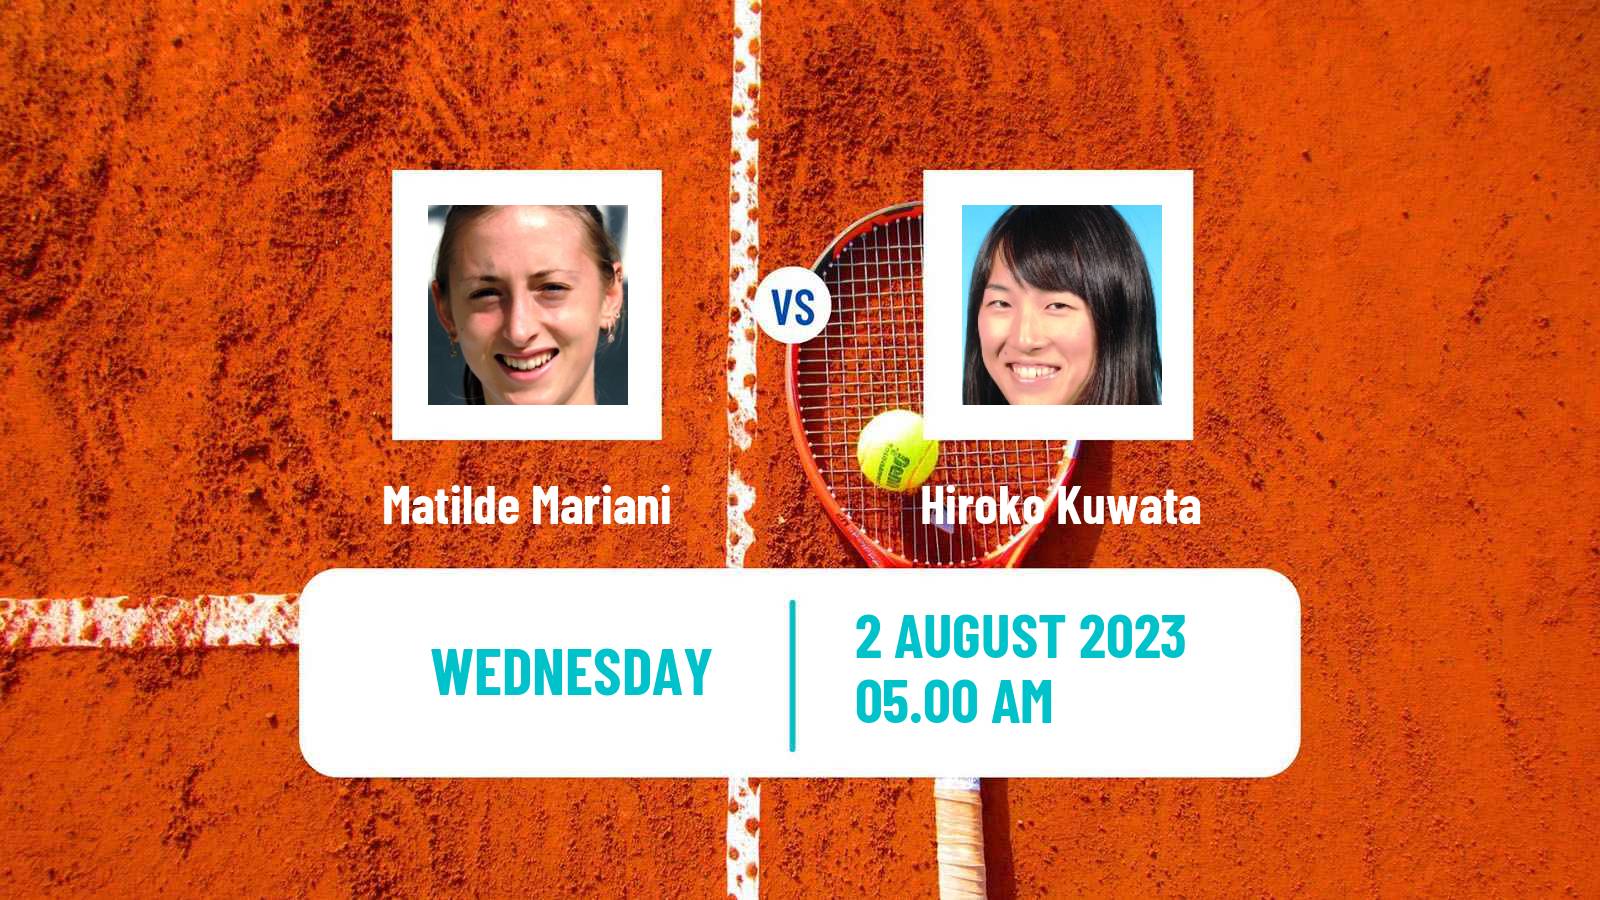 Tennis ITF W15 Monastir 26 Women Matilde Mariani - Hiroko Kuwata